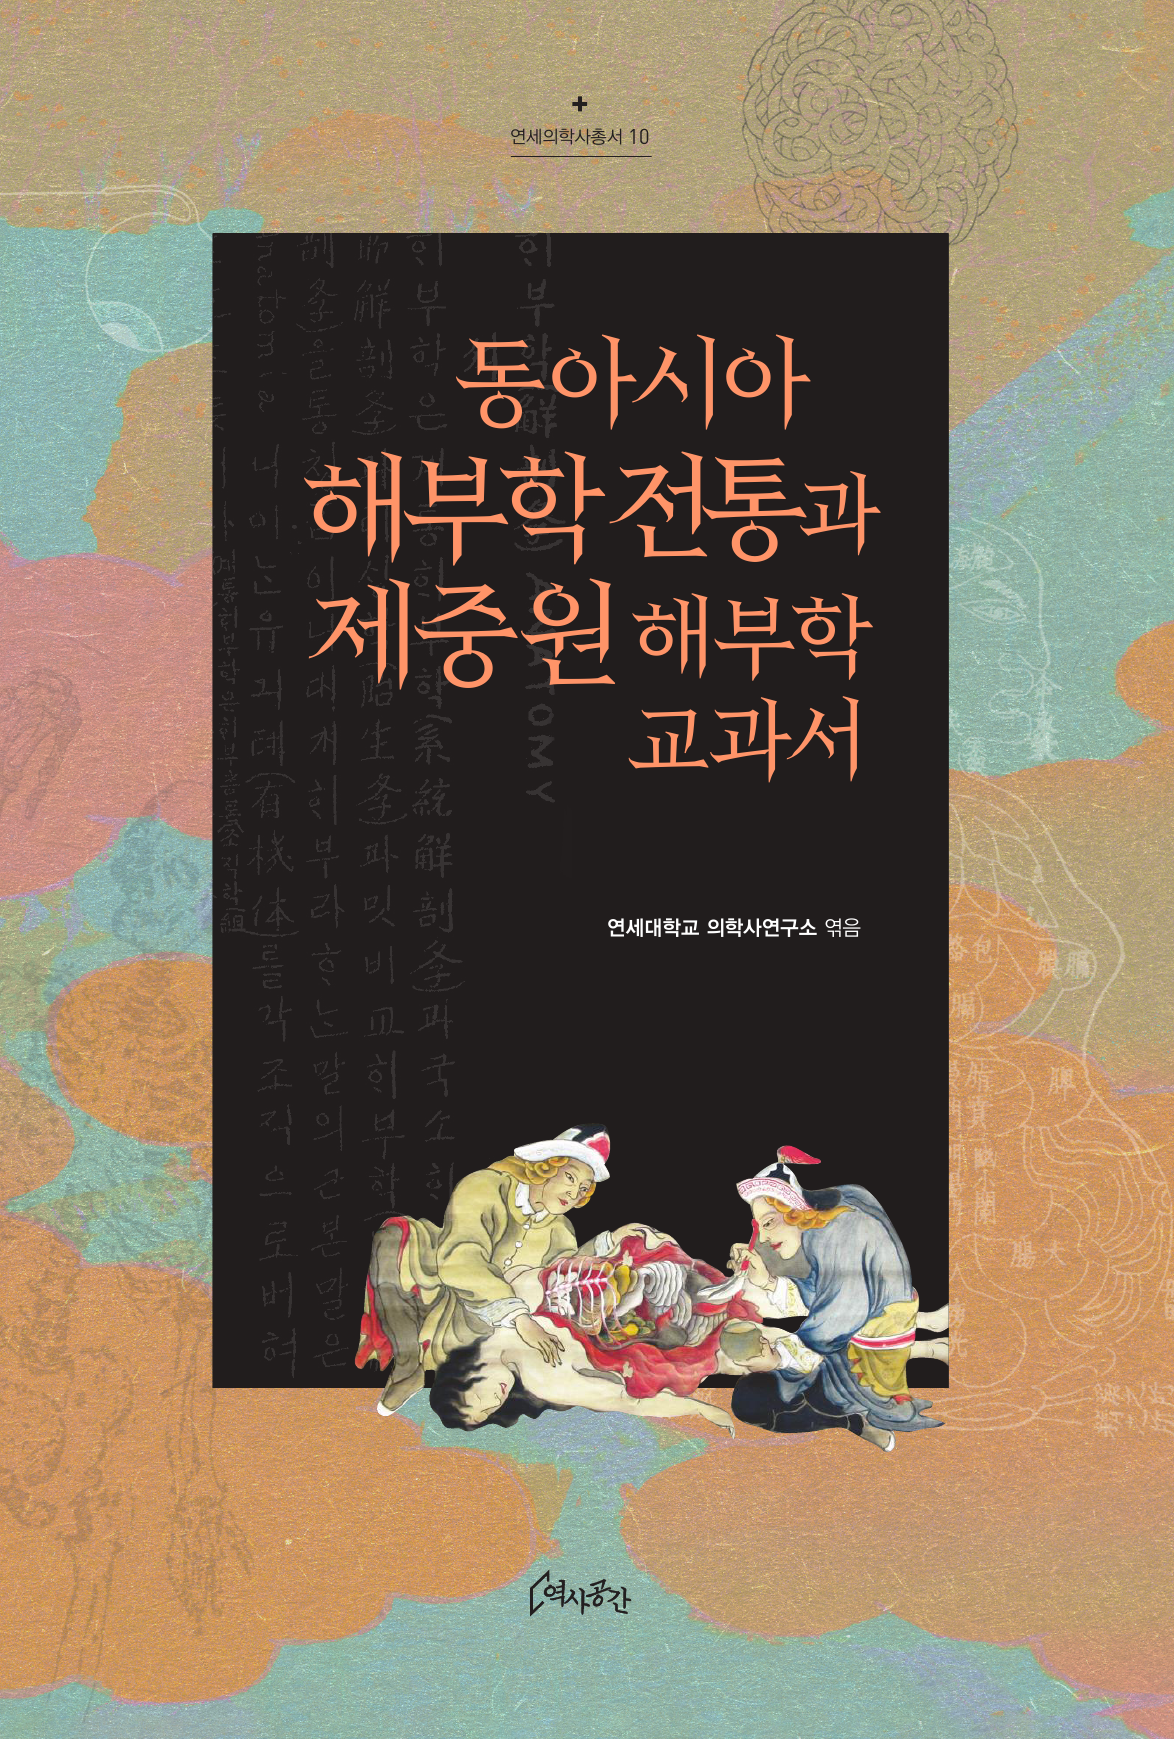 동아시아 해부학 전통과 제중원 해부학 교과서